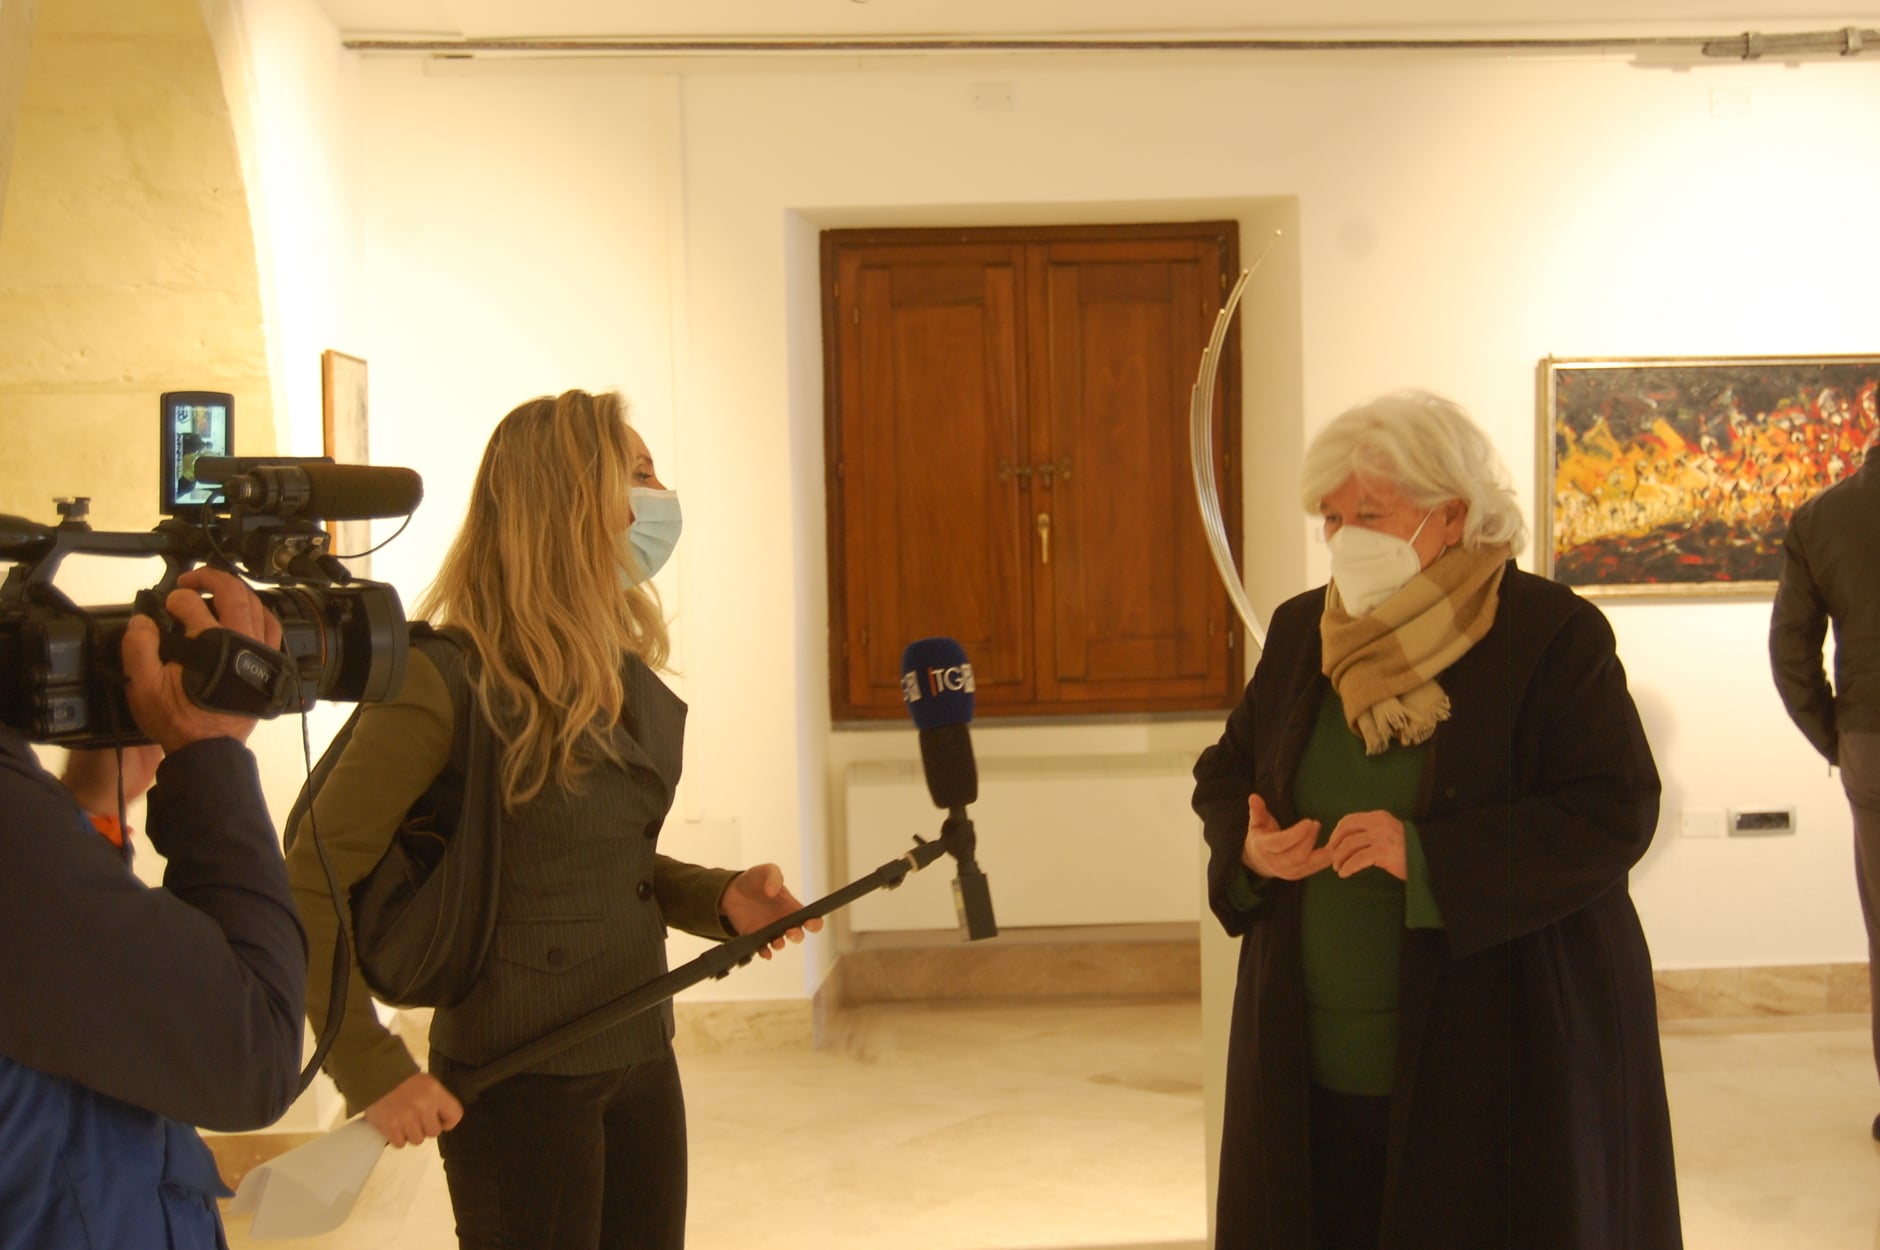 Il rettore Maria Del Zompo intervistata per il TGR RAI Sardegna